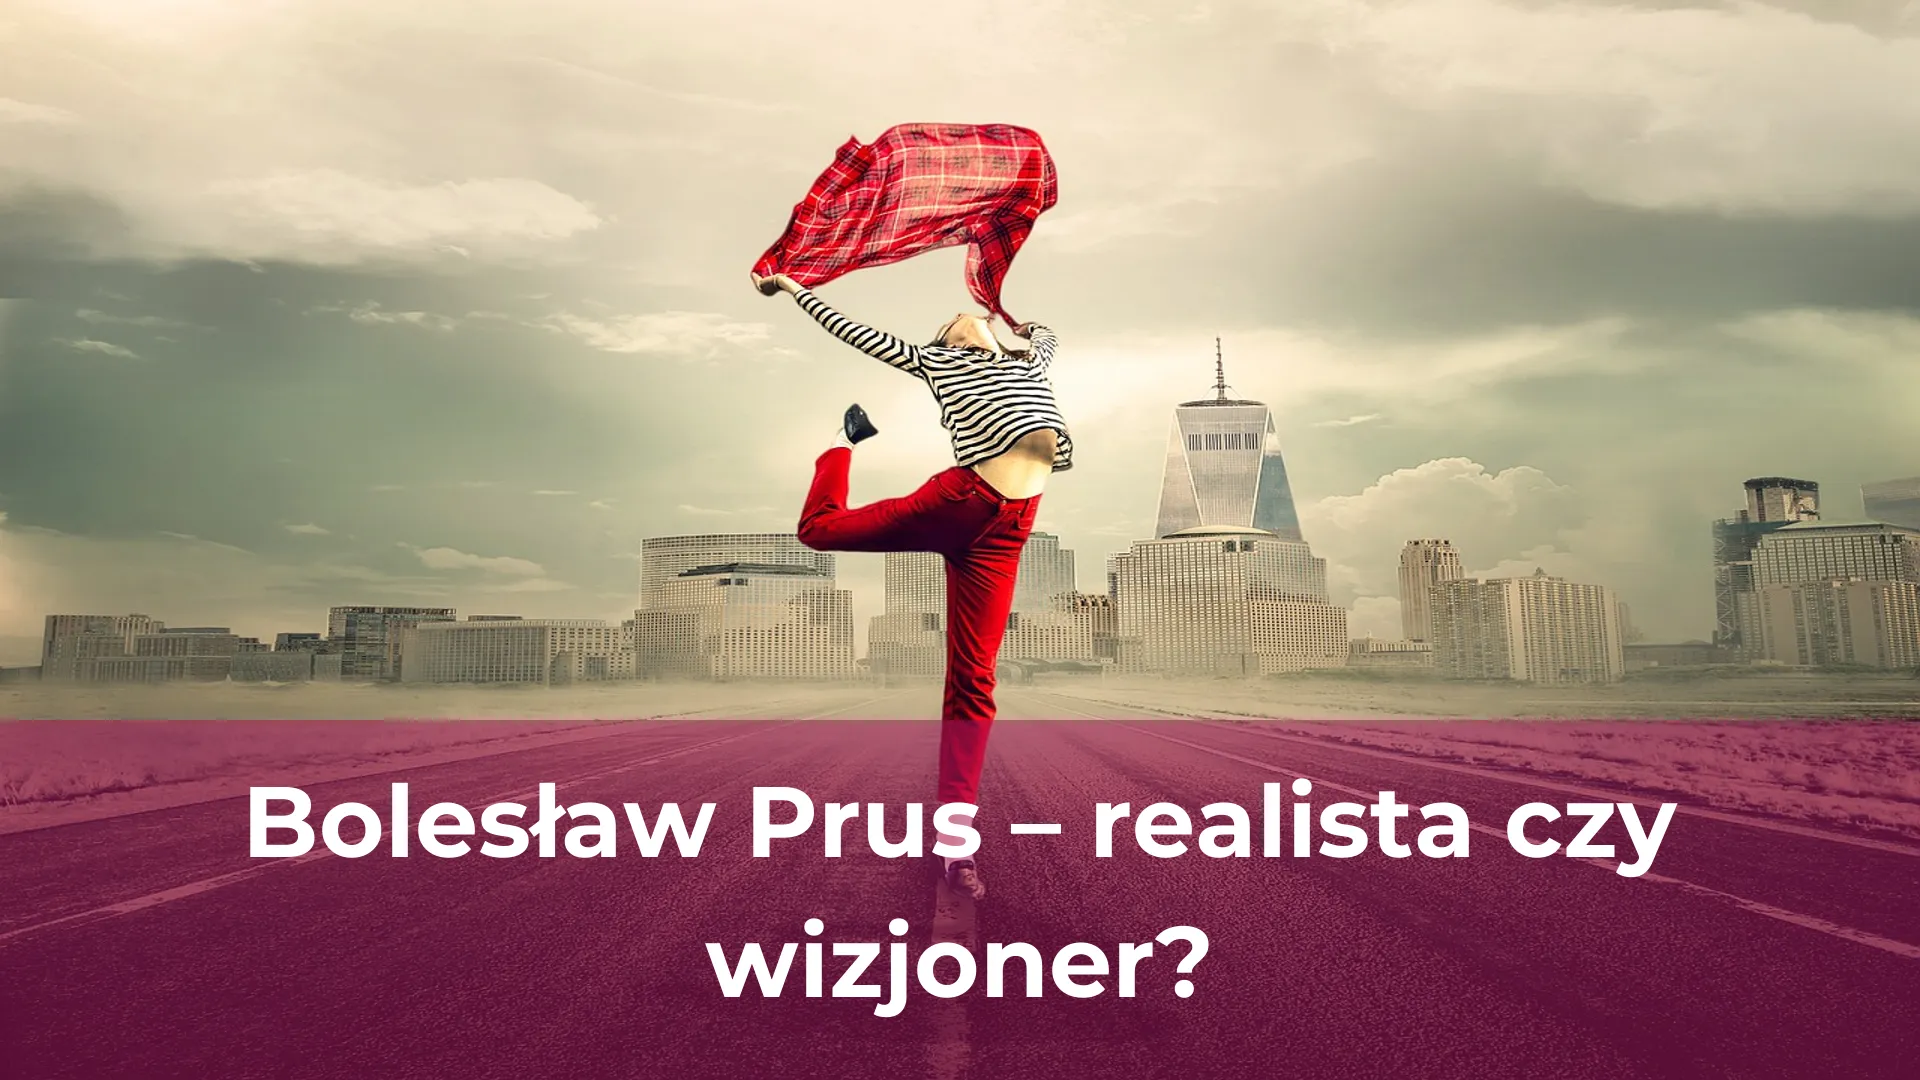 Bolesław prus realista czy wizjoner